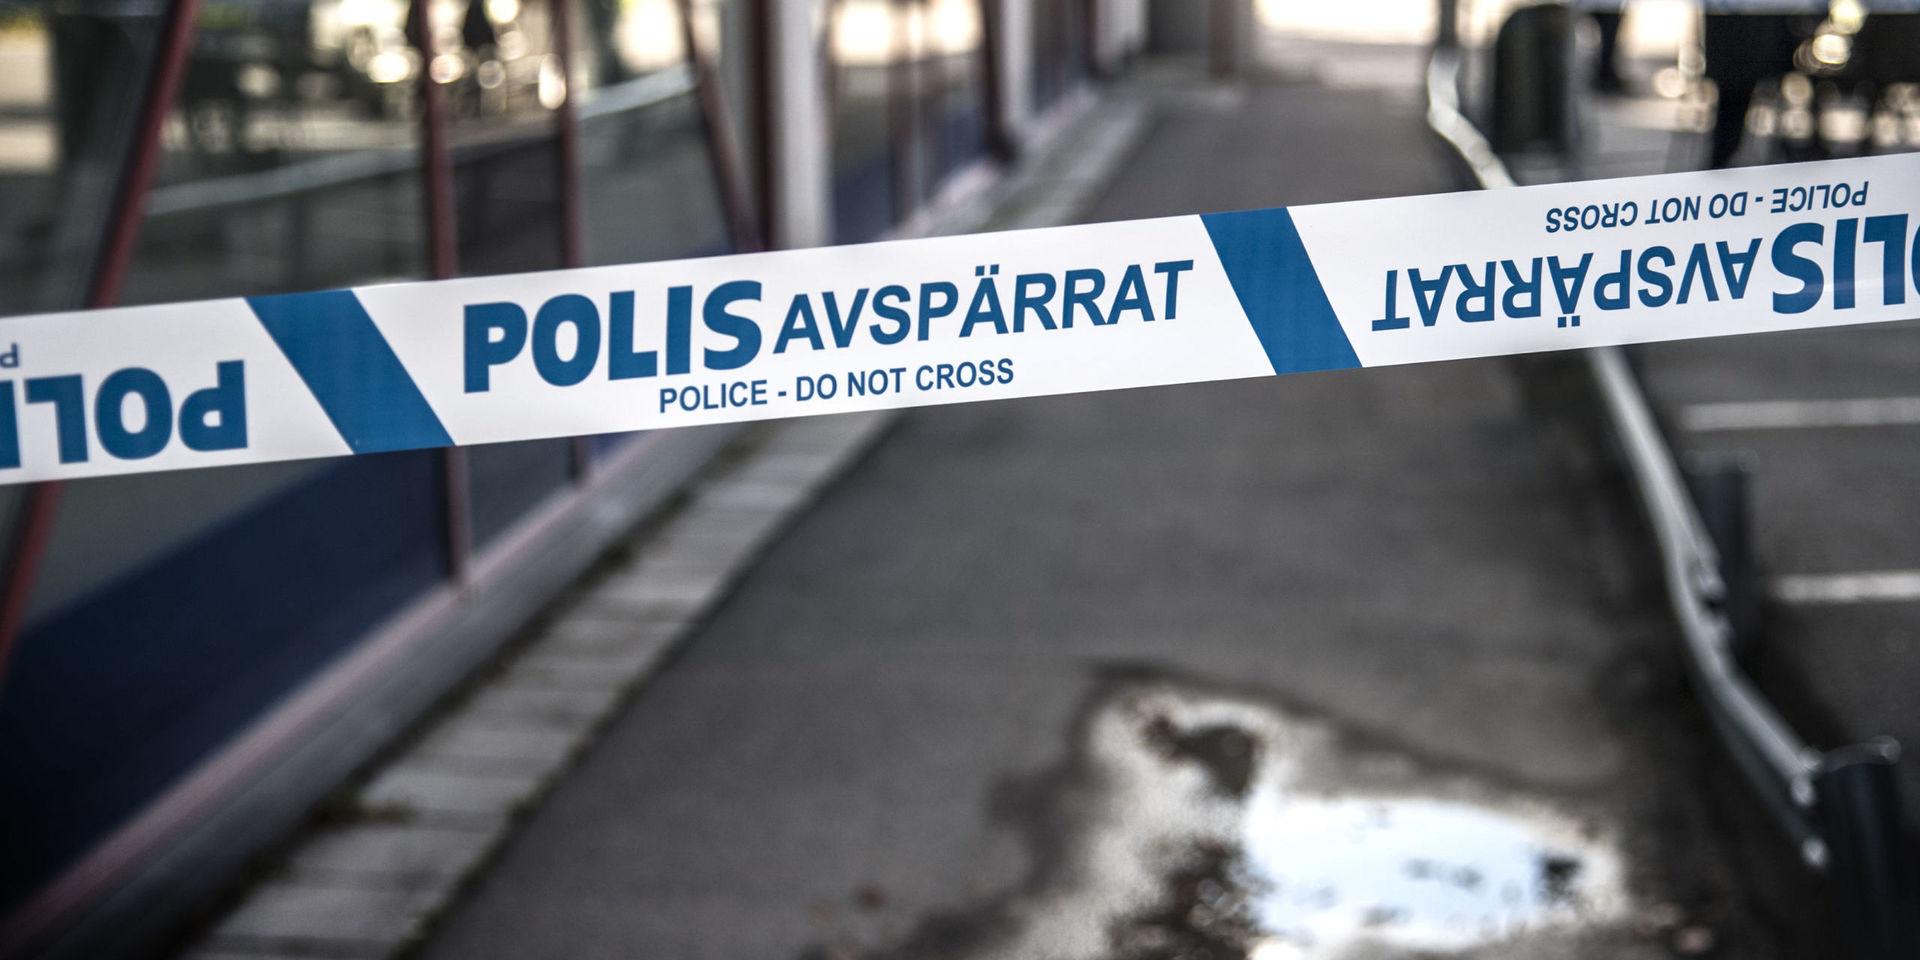 MÄRSTA 120181024 
Polisavspärrning vid Nordeas bankkontor i Märsta, norr om Stockholm, efter att fyra beväpnade män rånat banken. Larmet kom vid kvart över tio och ett fordon som kan ha använts vid rånet har hittats i närheten. Ingen person ska ha kommit fysiskt till skada. 
Foto: Anders Wiklund / TT / kod 10040